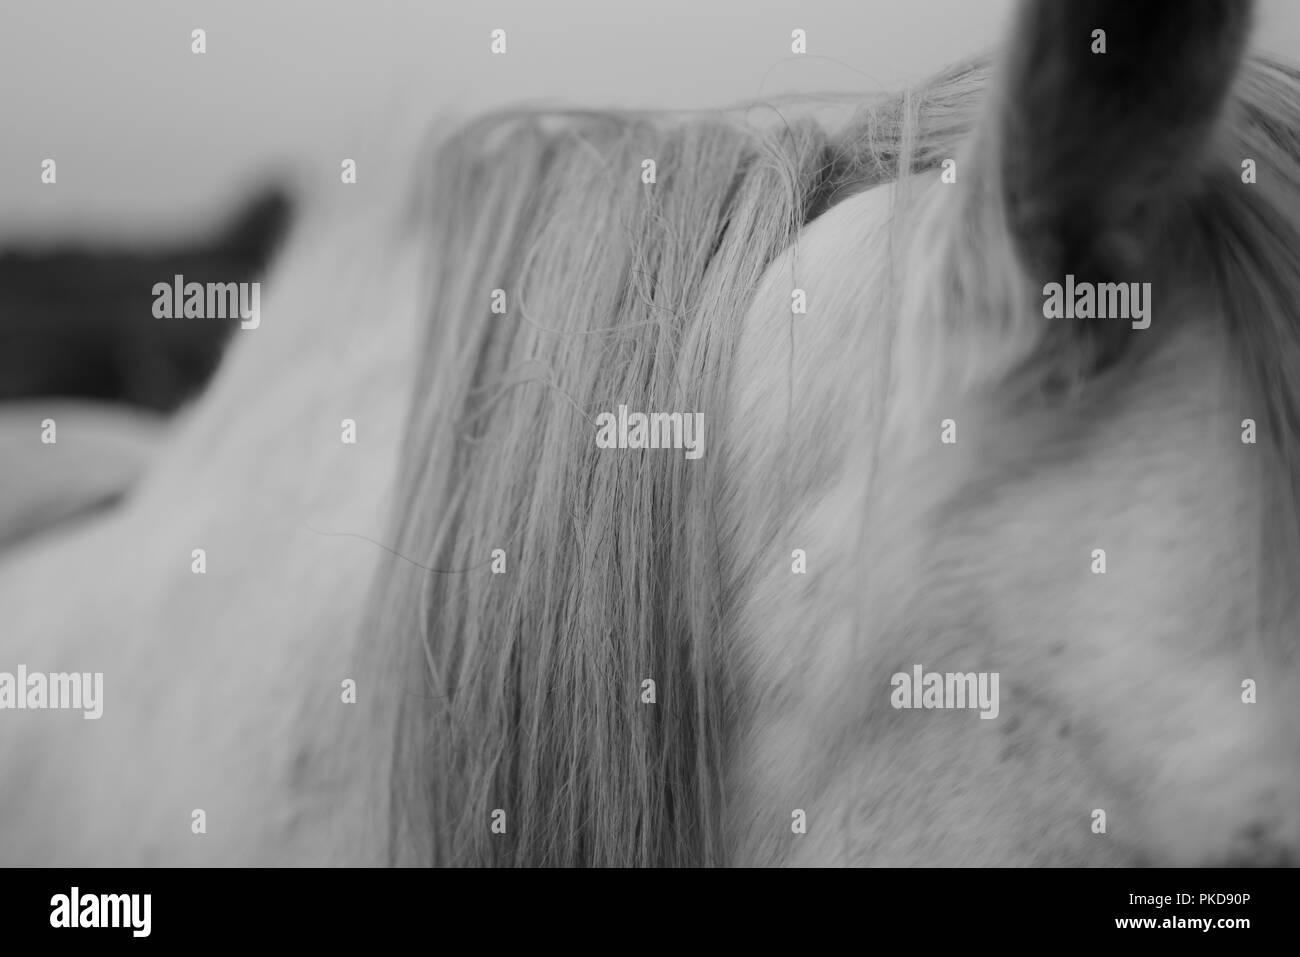 Una immagine in bianco e nero dell'orecchio, la testa, il collo e la criniera di un cavallo bianco. Foto Stock